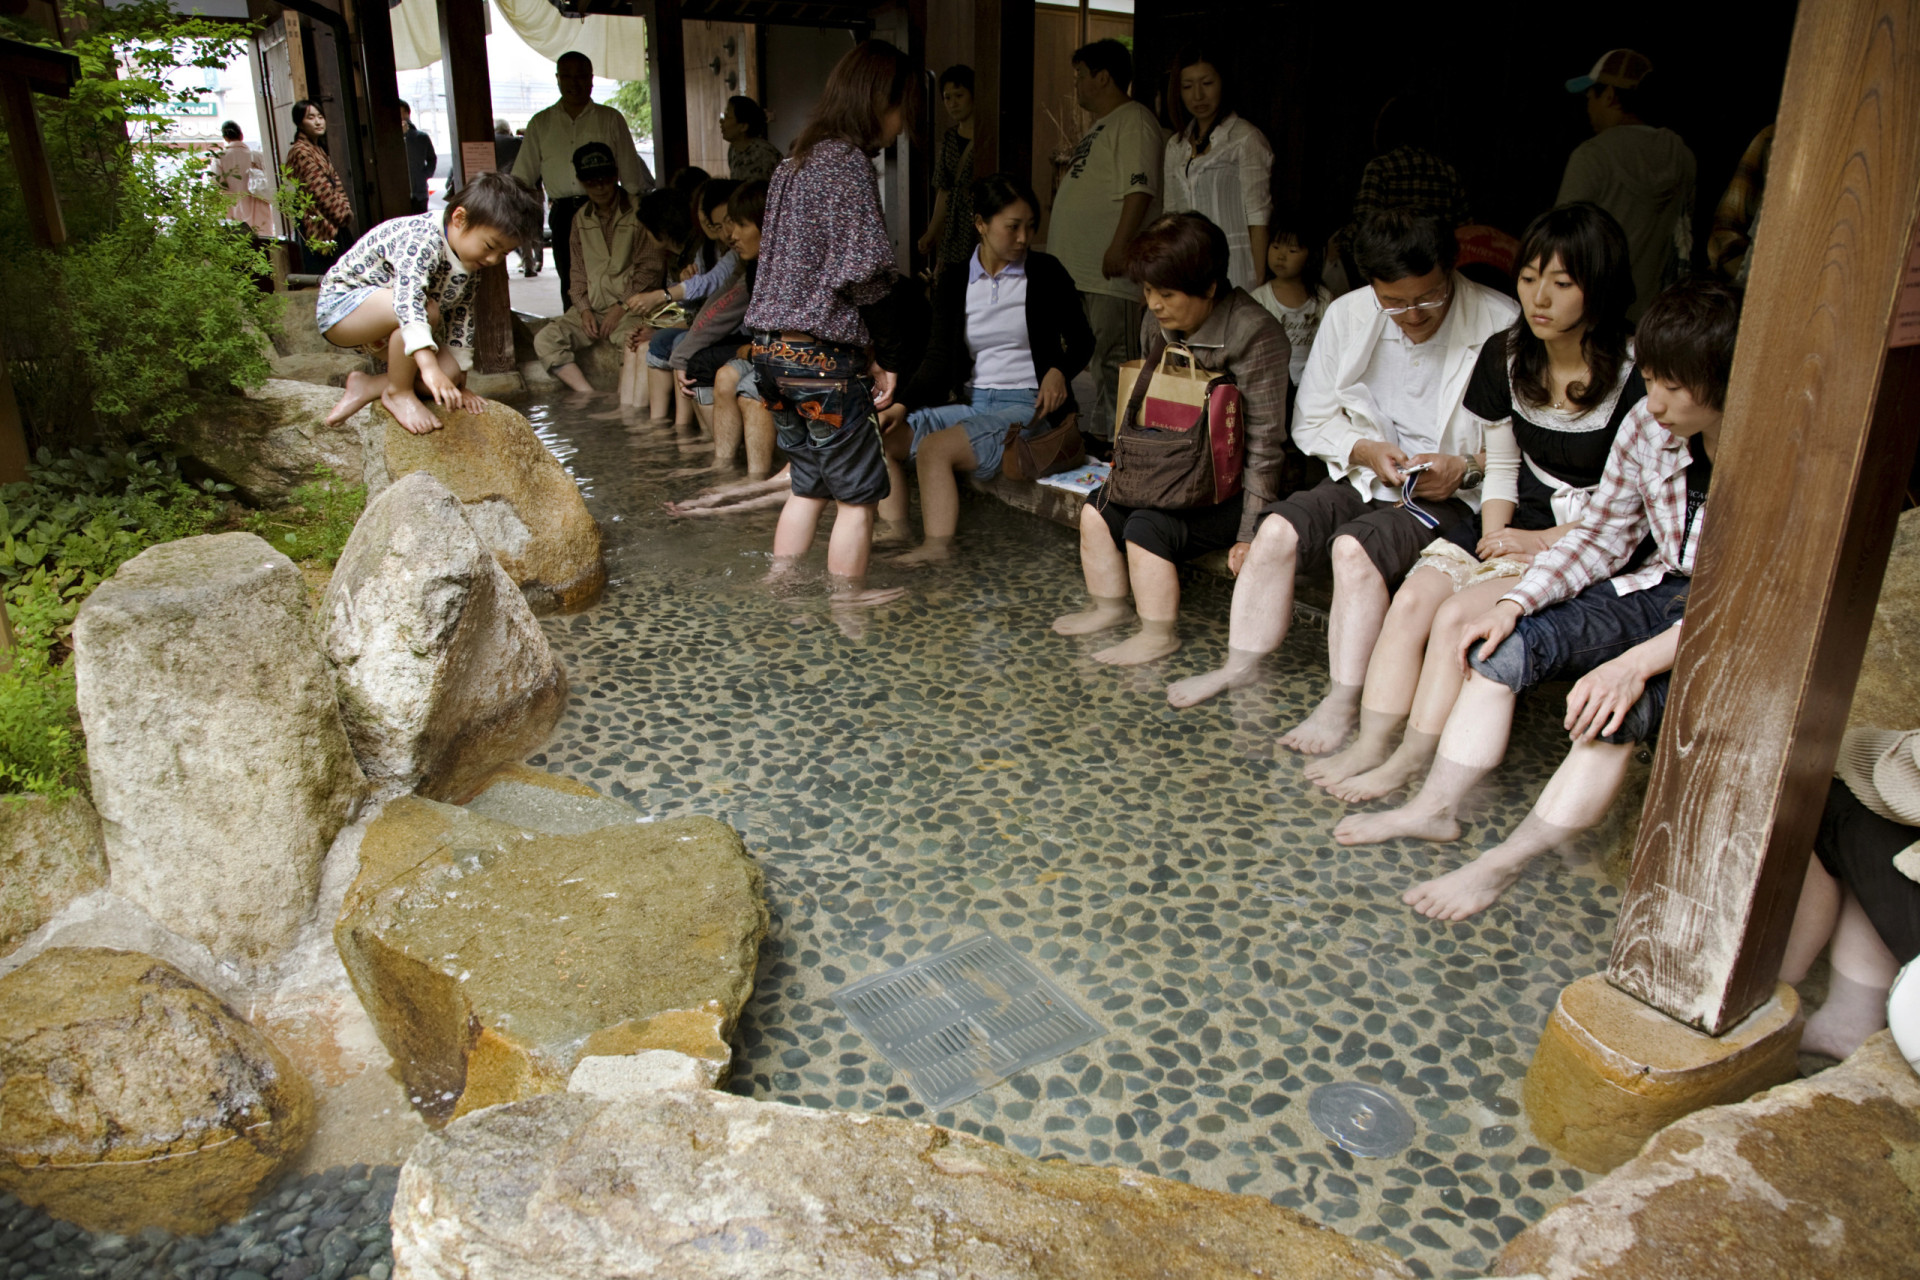 <p>Les sources d'eau chaude ne manquent pas au Japon. Des bains de pieds publics gratuits, connus sous le nom d'<em>ashiyu</em>, peuvent être trouvés dans plusieurs endroits.</p>